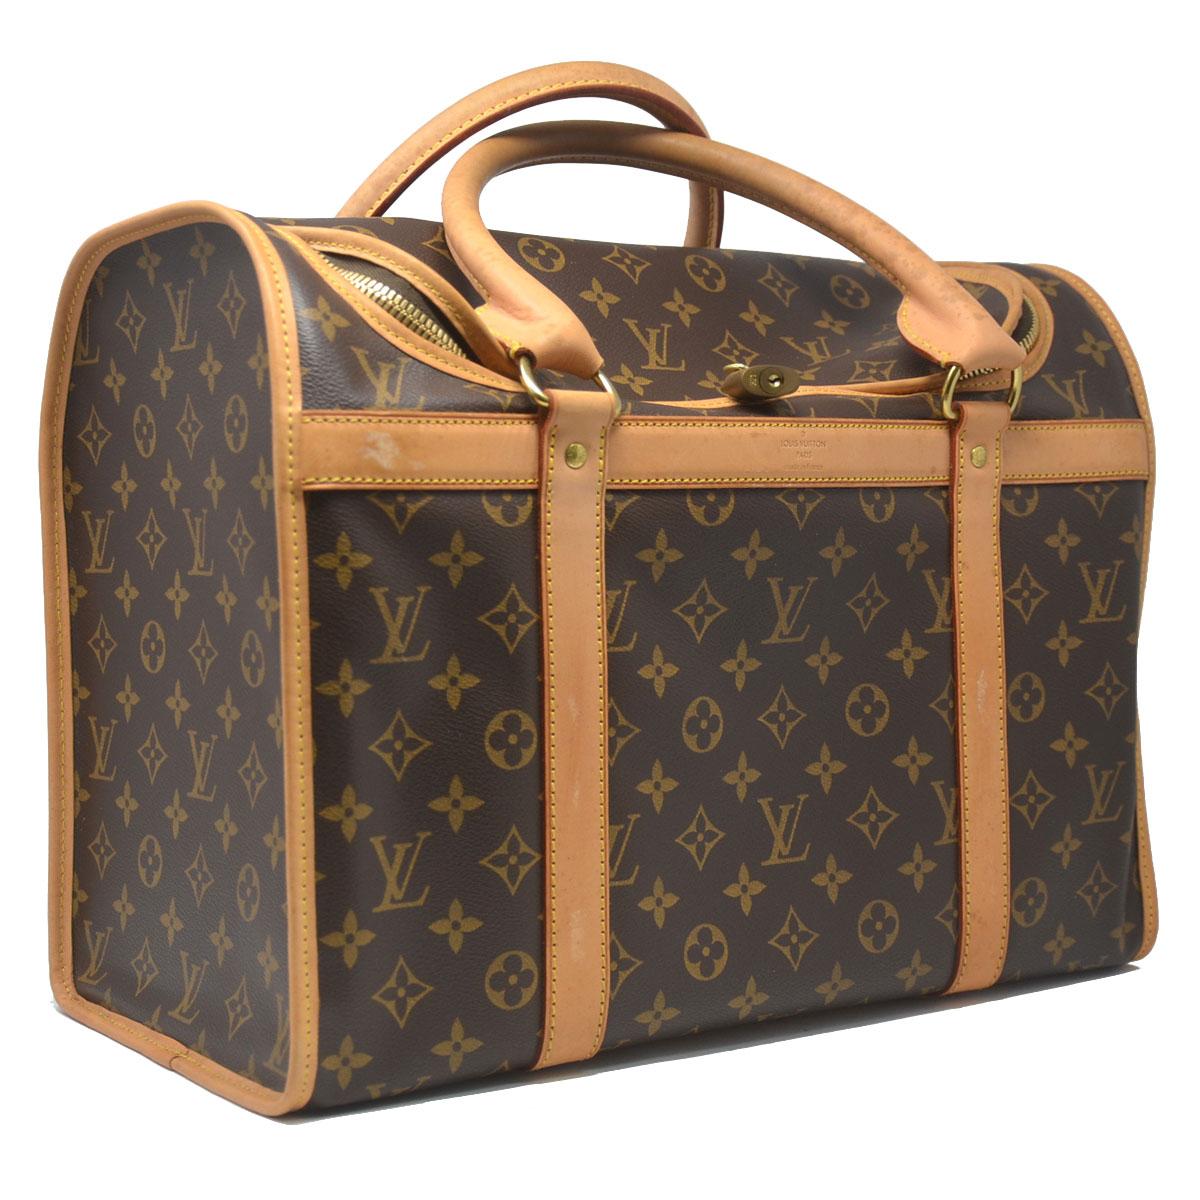 Company-Louis Vuitton
Model-Sac Chien 40 Monogram Pet Carrier Handbag 
Color-Brown
Date Code-TH1047
Material-Canvas 
Measurements-15.5